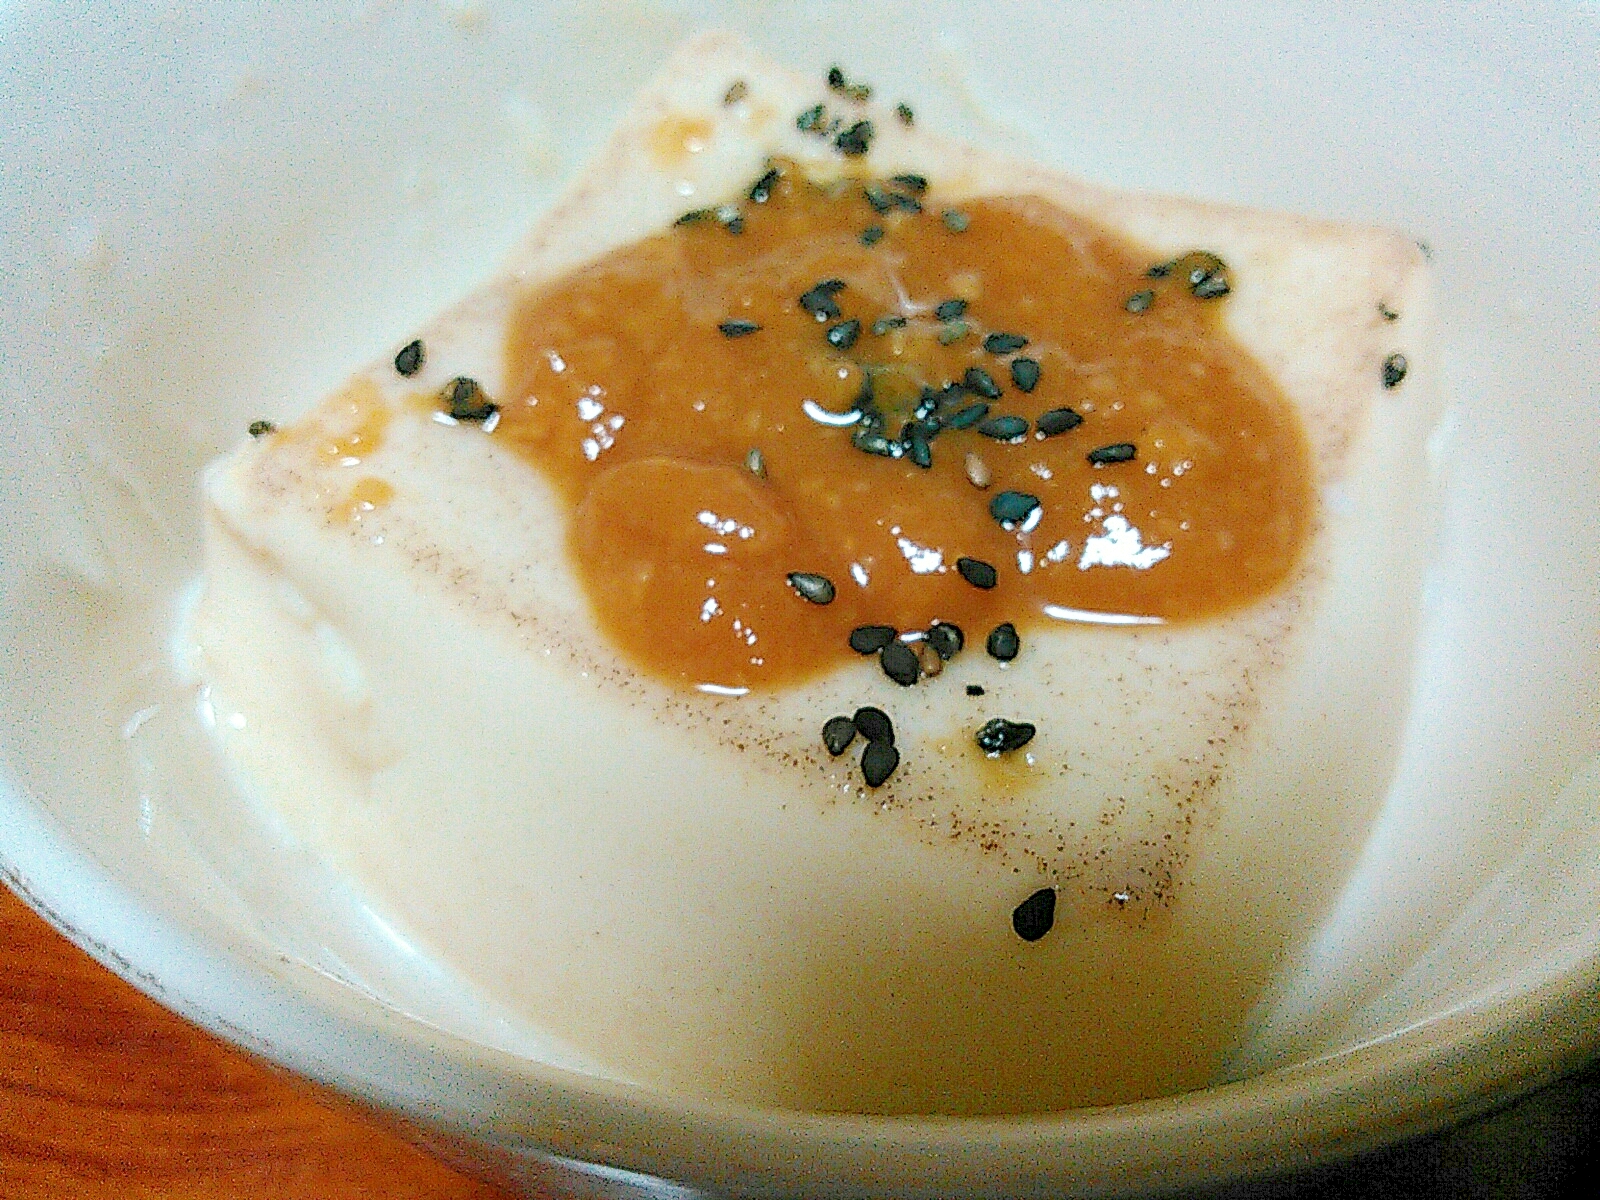 胡麻豆腐の生姜甘酢味噌かけ